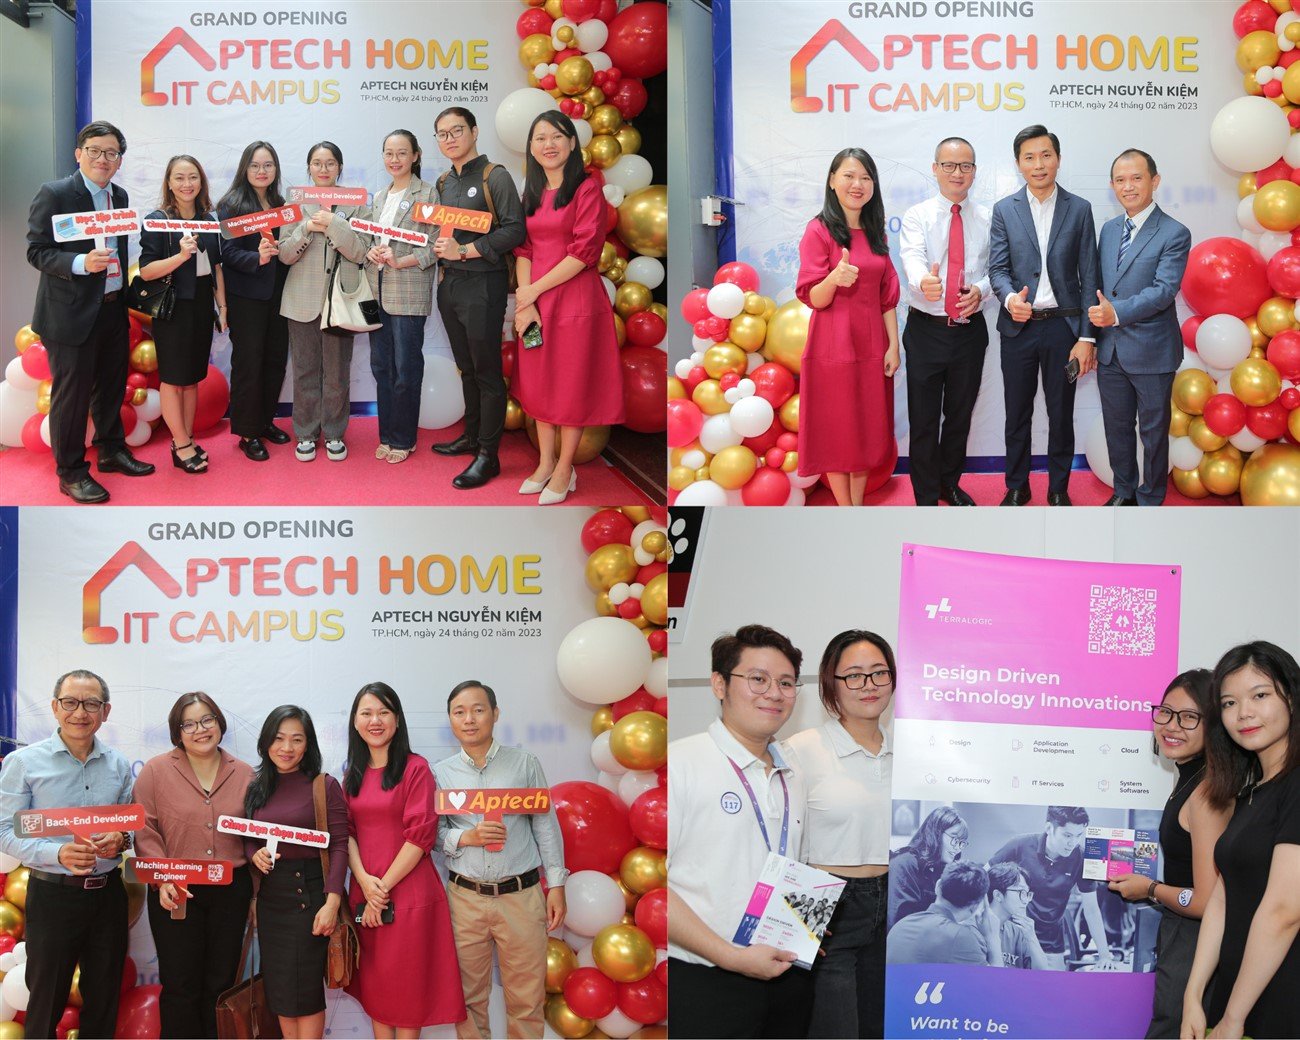 Aptech Nguyễn Kiệm: Cơ sở mới tiếp nối thành công phương châm Aptech Home - IT Campus - Ảnh 2.